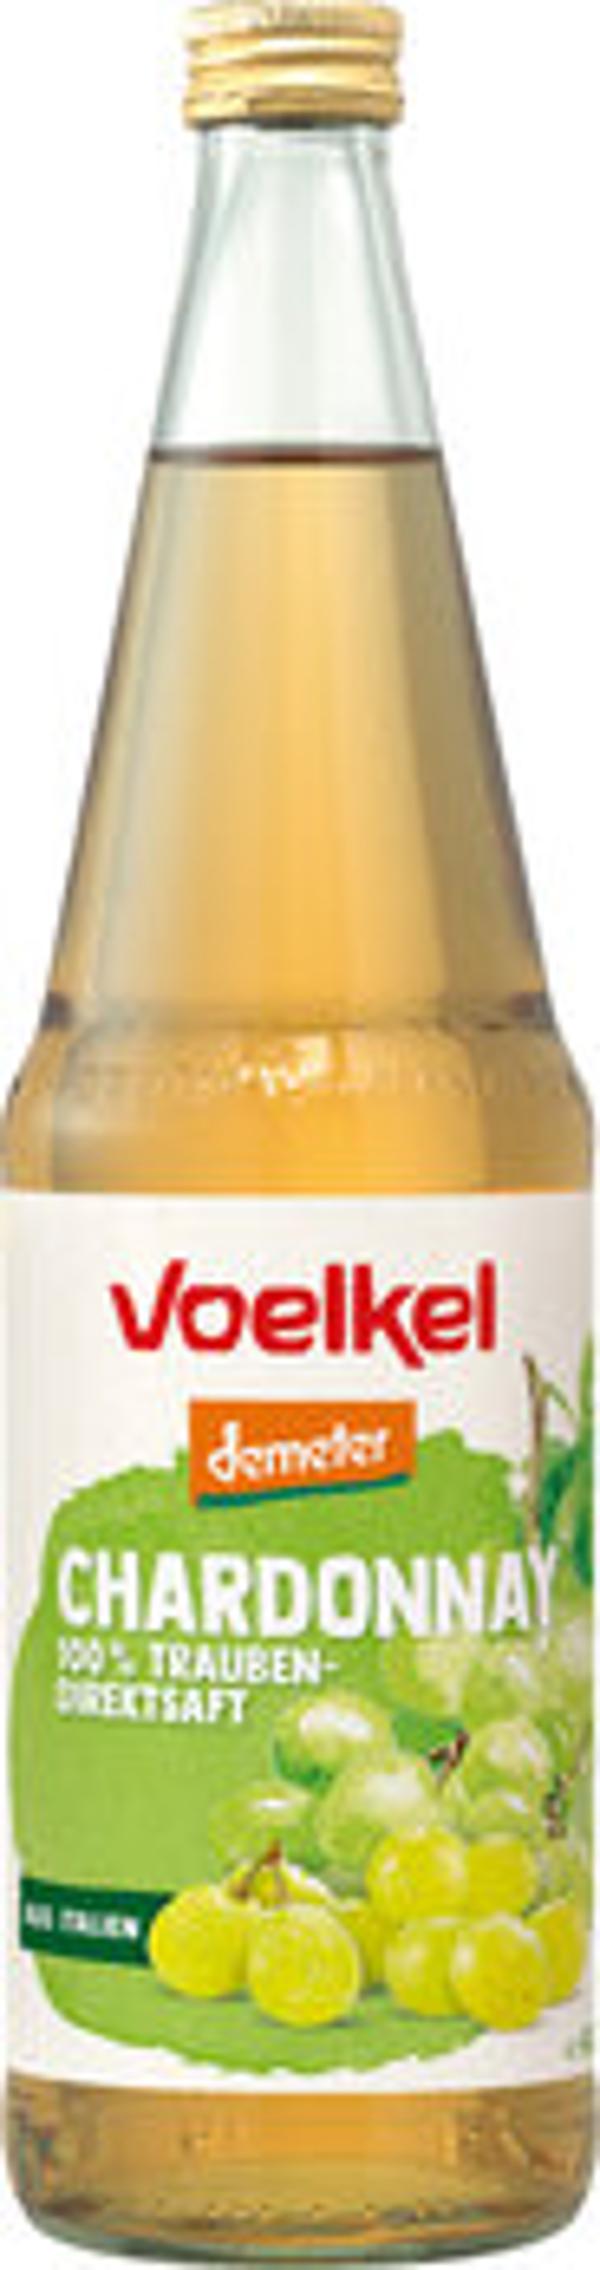 Produktbild von Voelkel Chardonnay Traubensaft weiß 0,7l